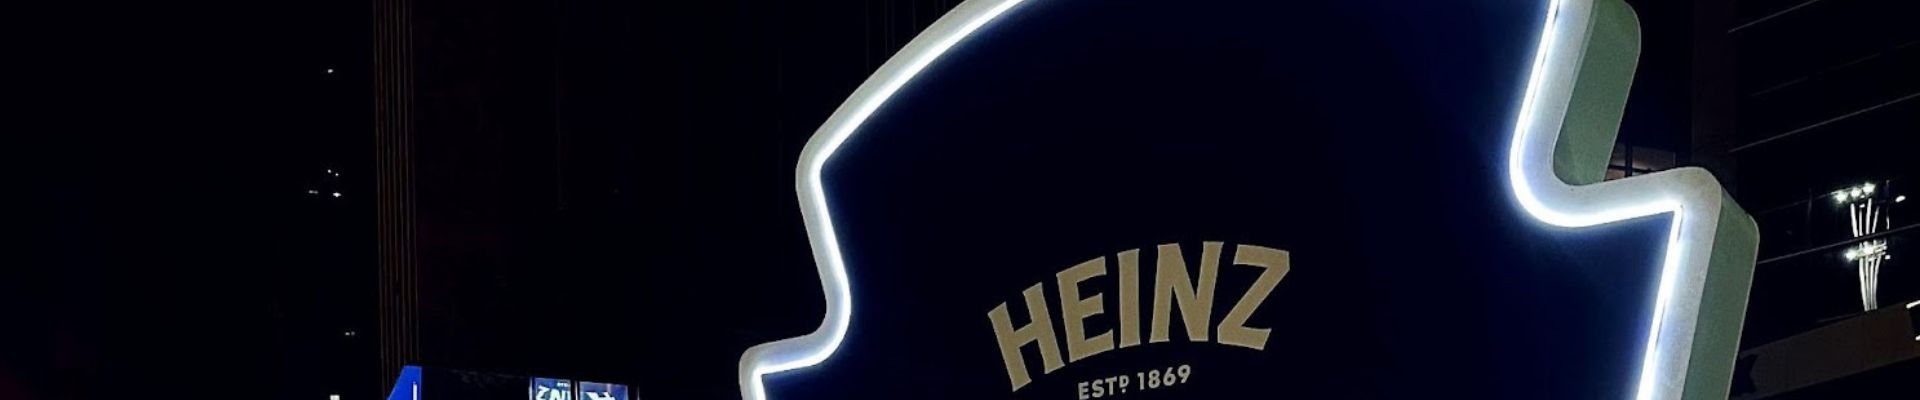 Heinz utiliza IA e estimula consumidores a experimentarem sua maionese